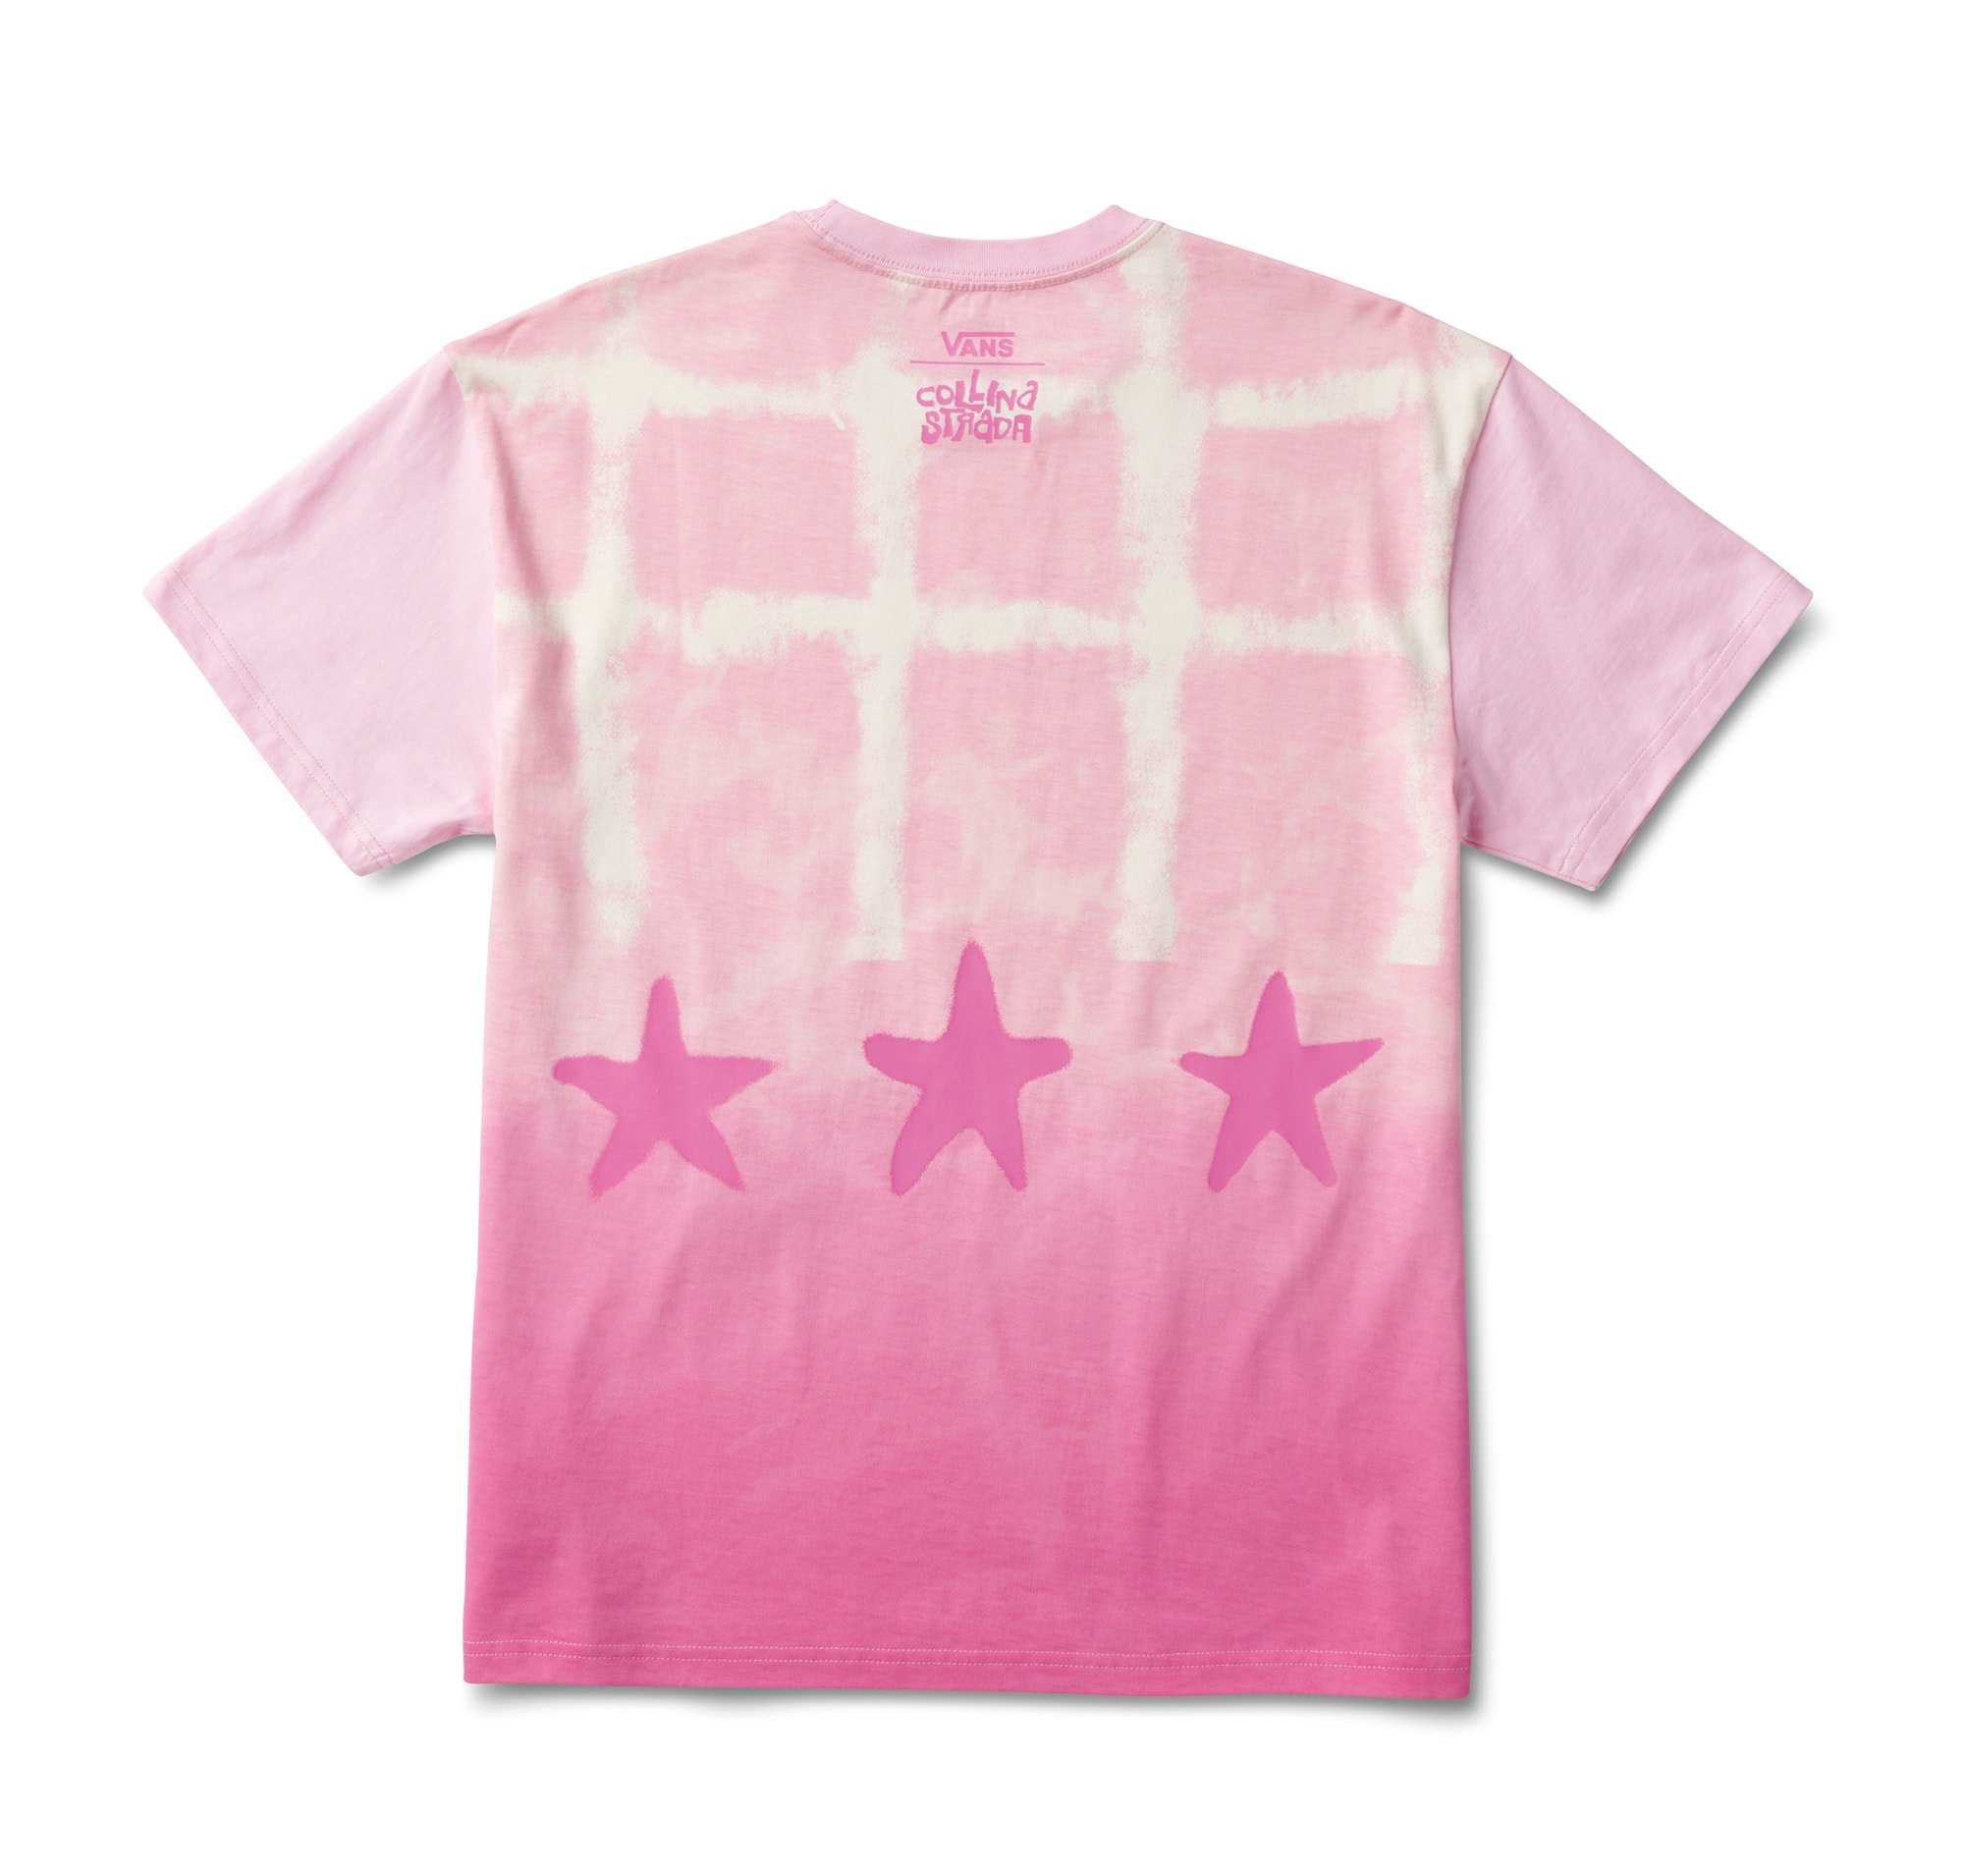 https://www.vans.com/content/publish/caas/v1/media/284706/data/81ecc65cd630c01fbb64b2f715a0d6be/collina-pink-shirt.jpg